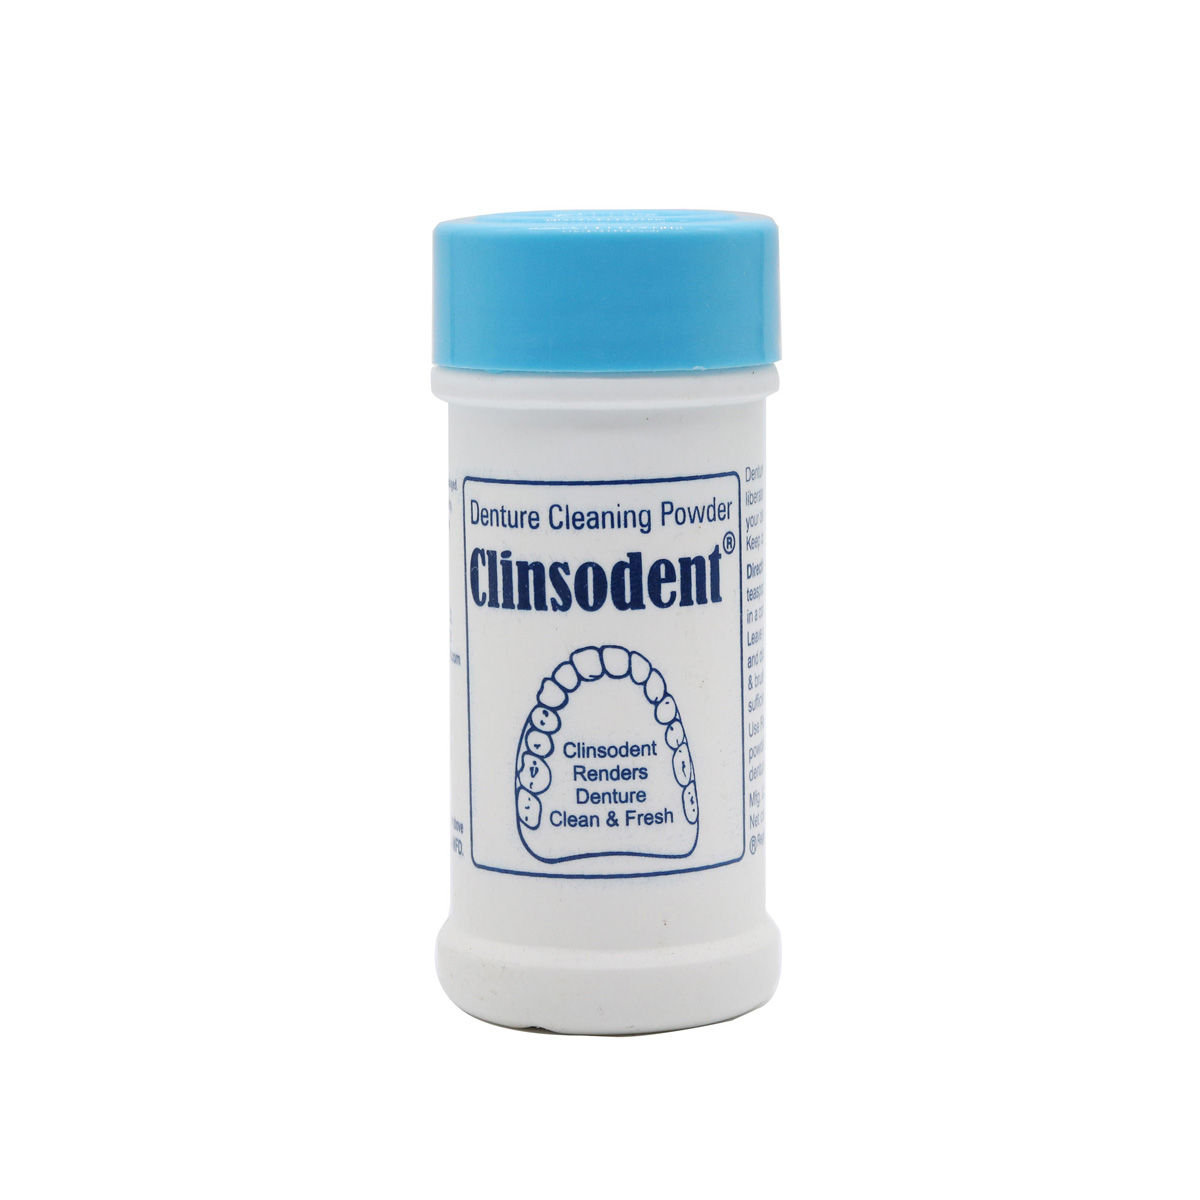 Buy Clinsodent Scientific Denture Cleanser Powder, 60 gm Online